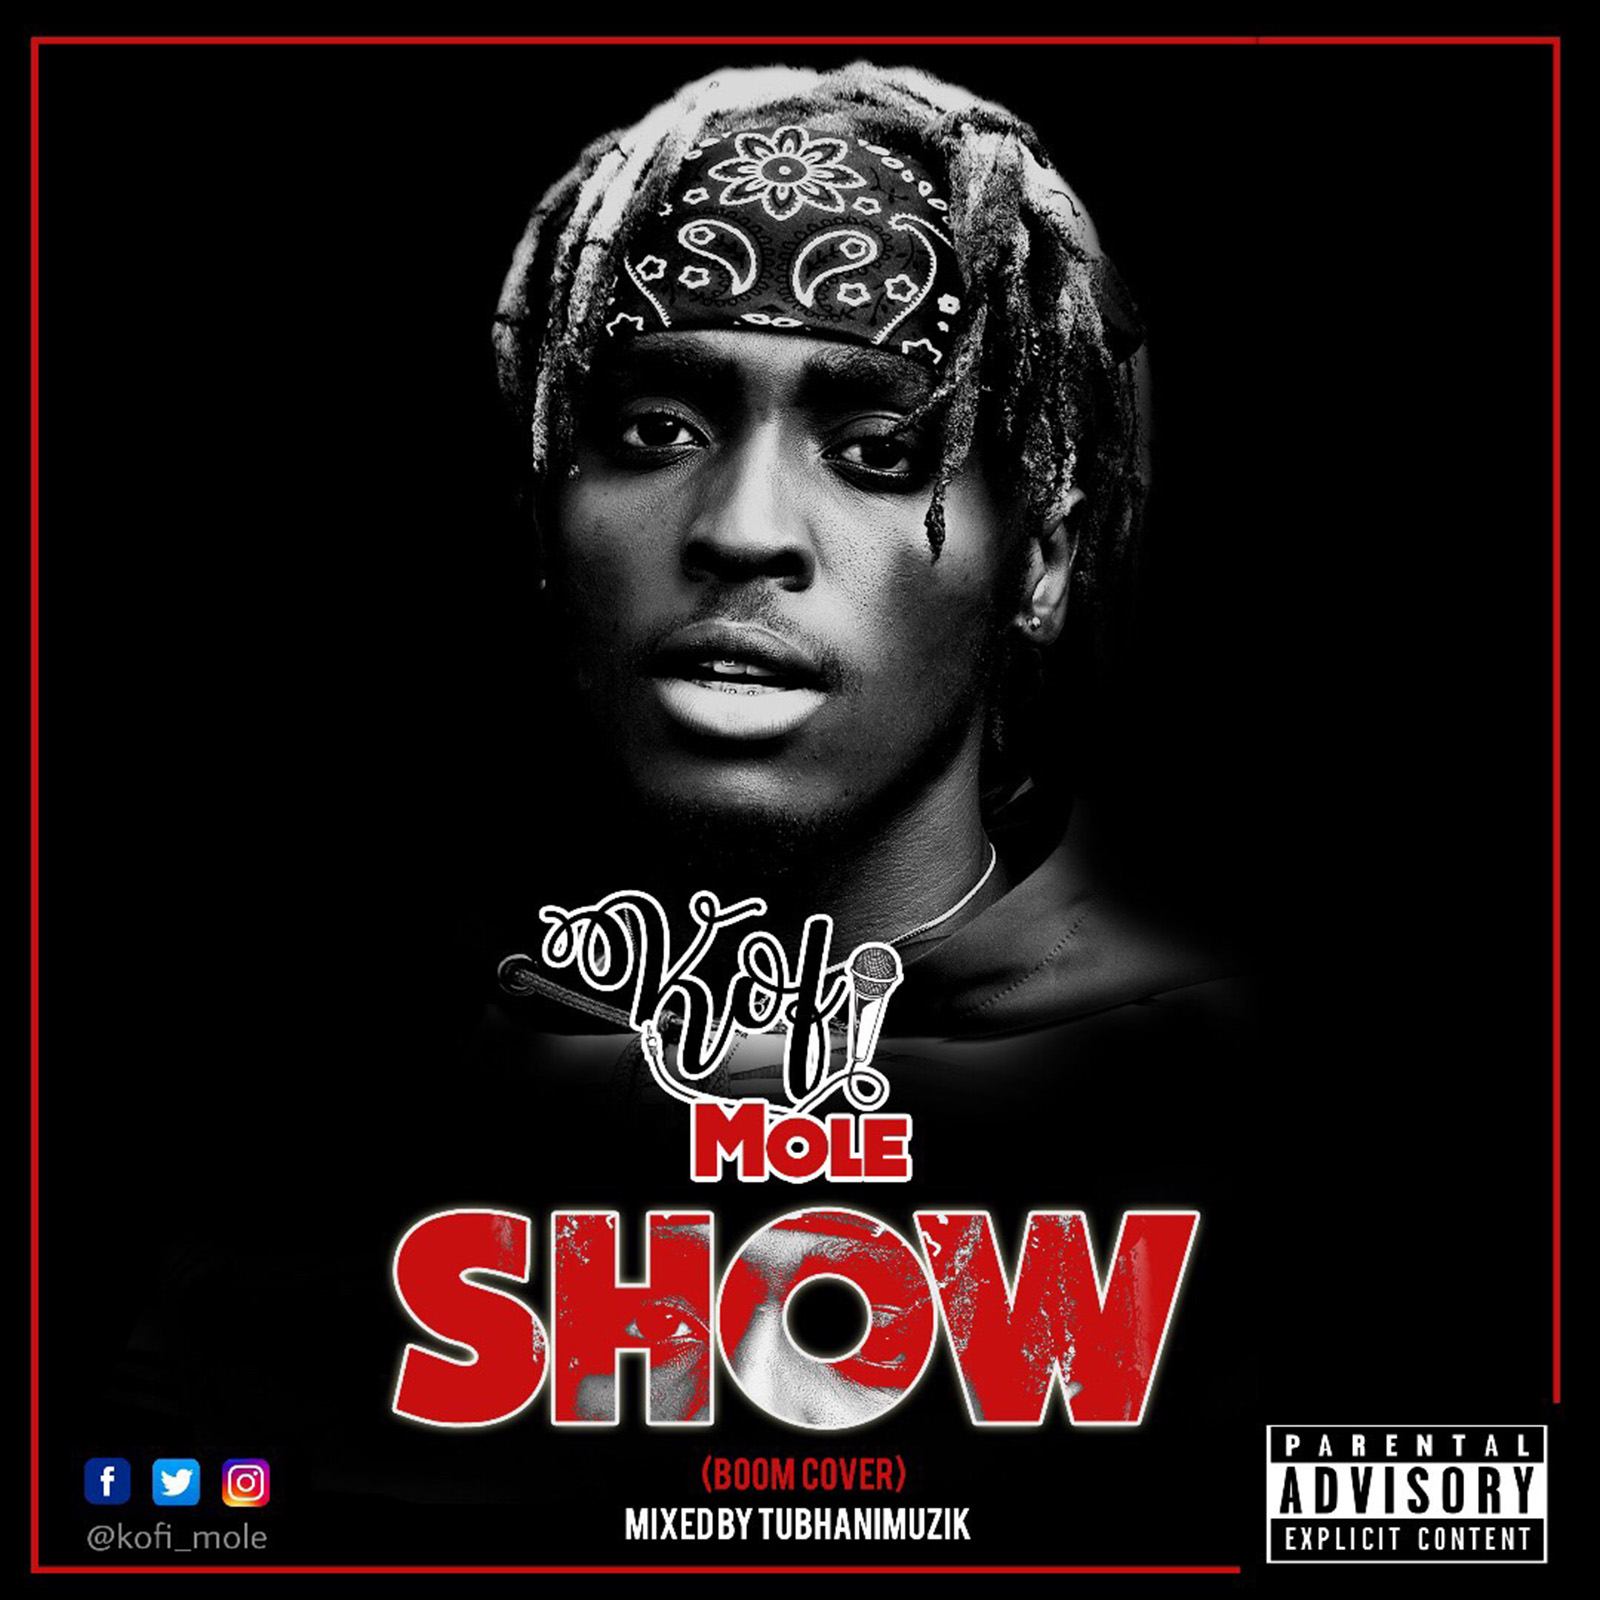 Show (Boom Cover) by Kofi Mole